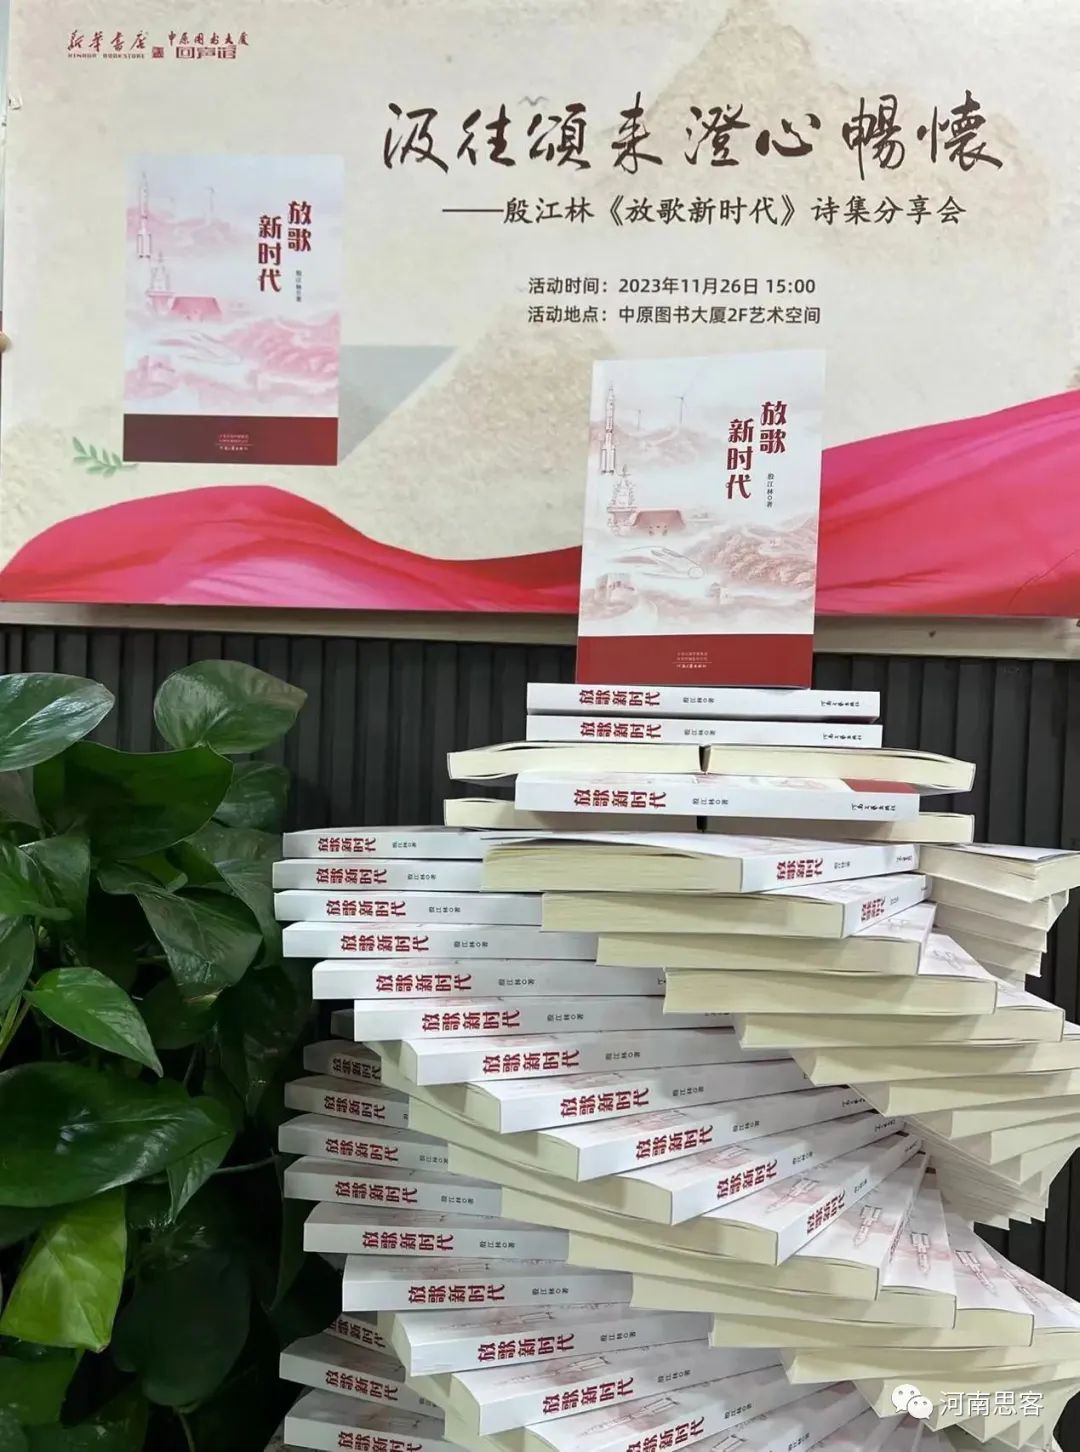 河南诗人殷江林《放歌新时代》诗集分享会在郑州举行